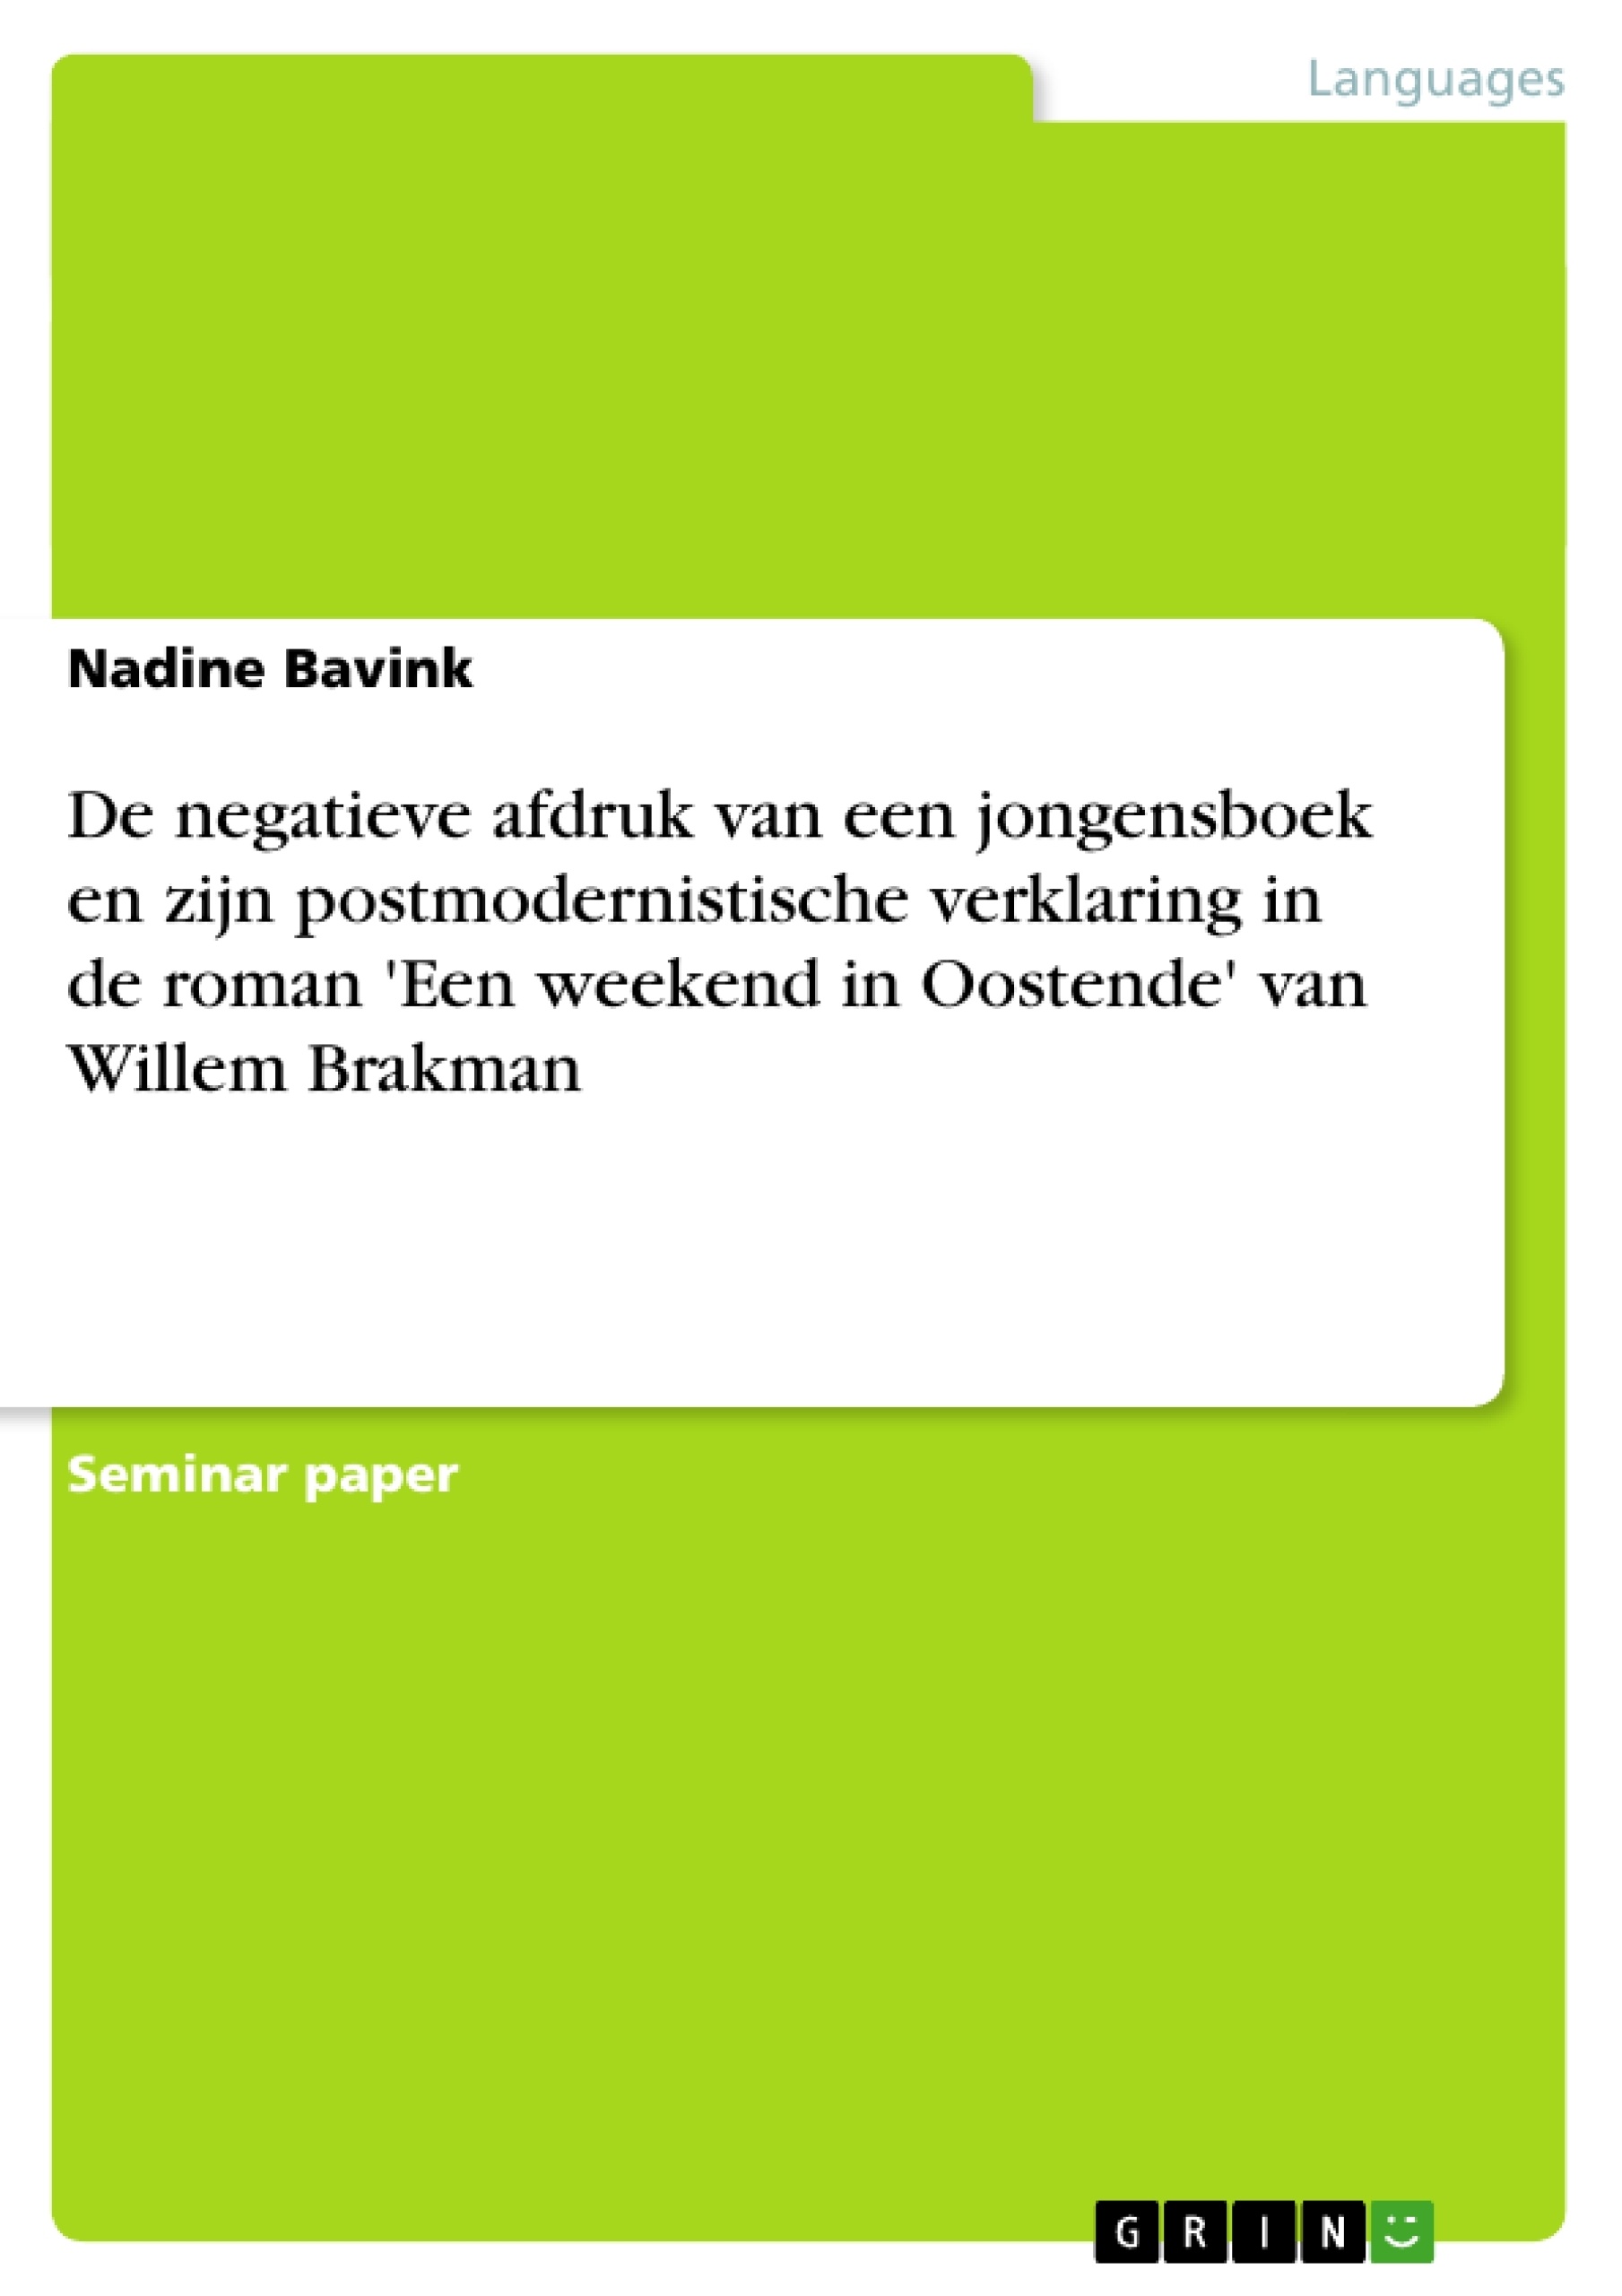 Título: De negatieve afdruk van een jongensboek en zijn postmodernistische verklaring in de roman 'Een weekend in Oostende' van Willem Brakman